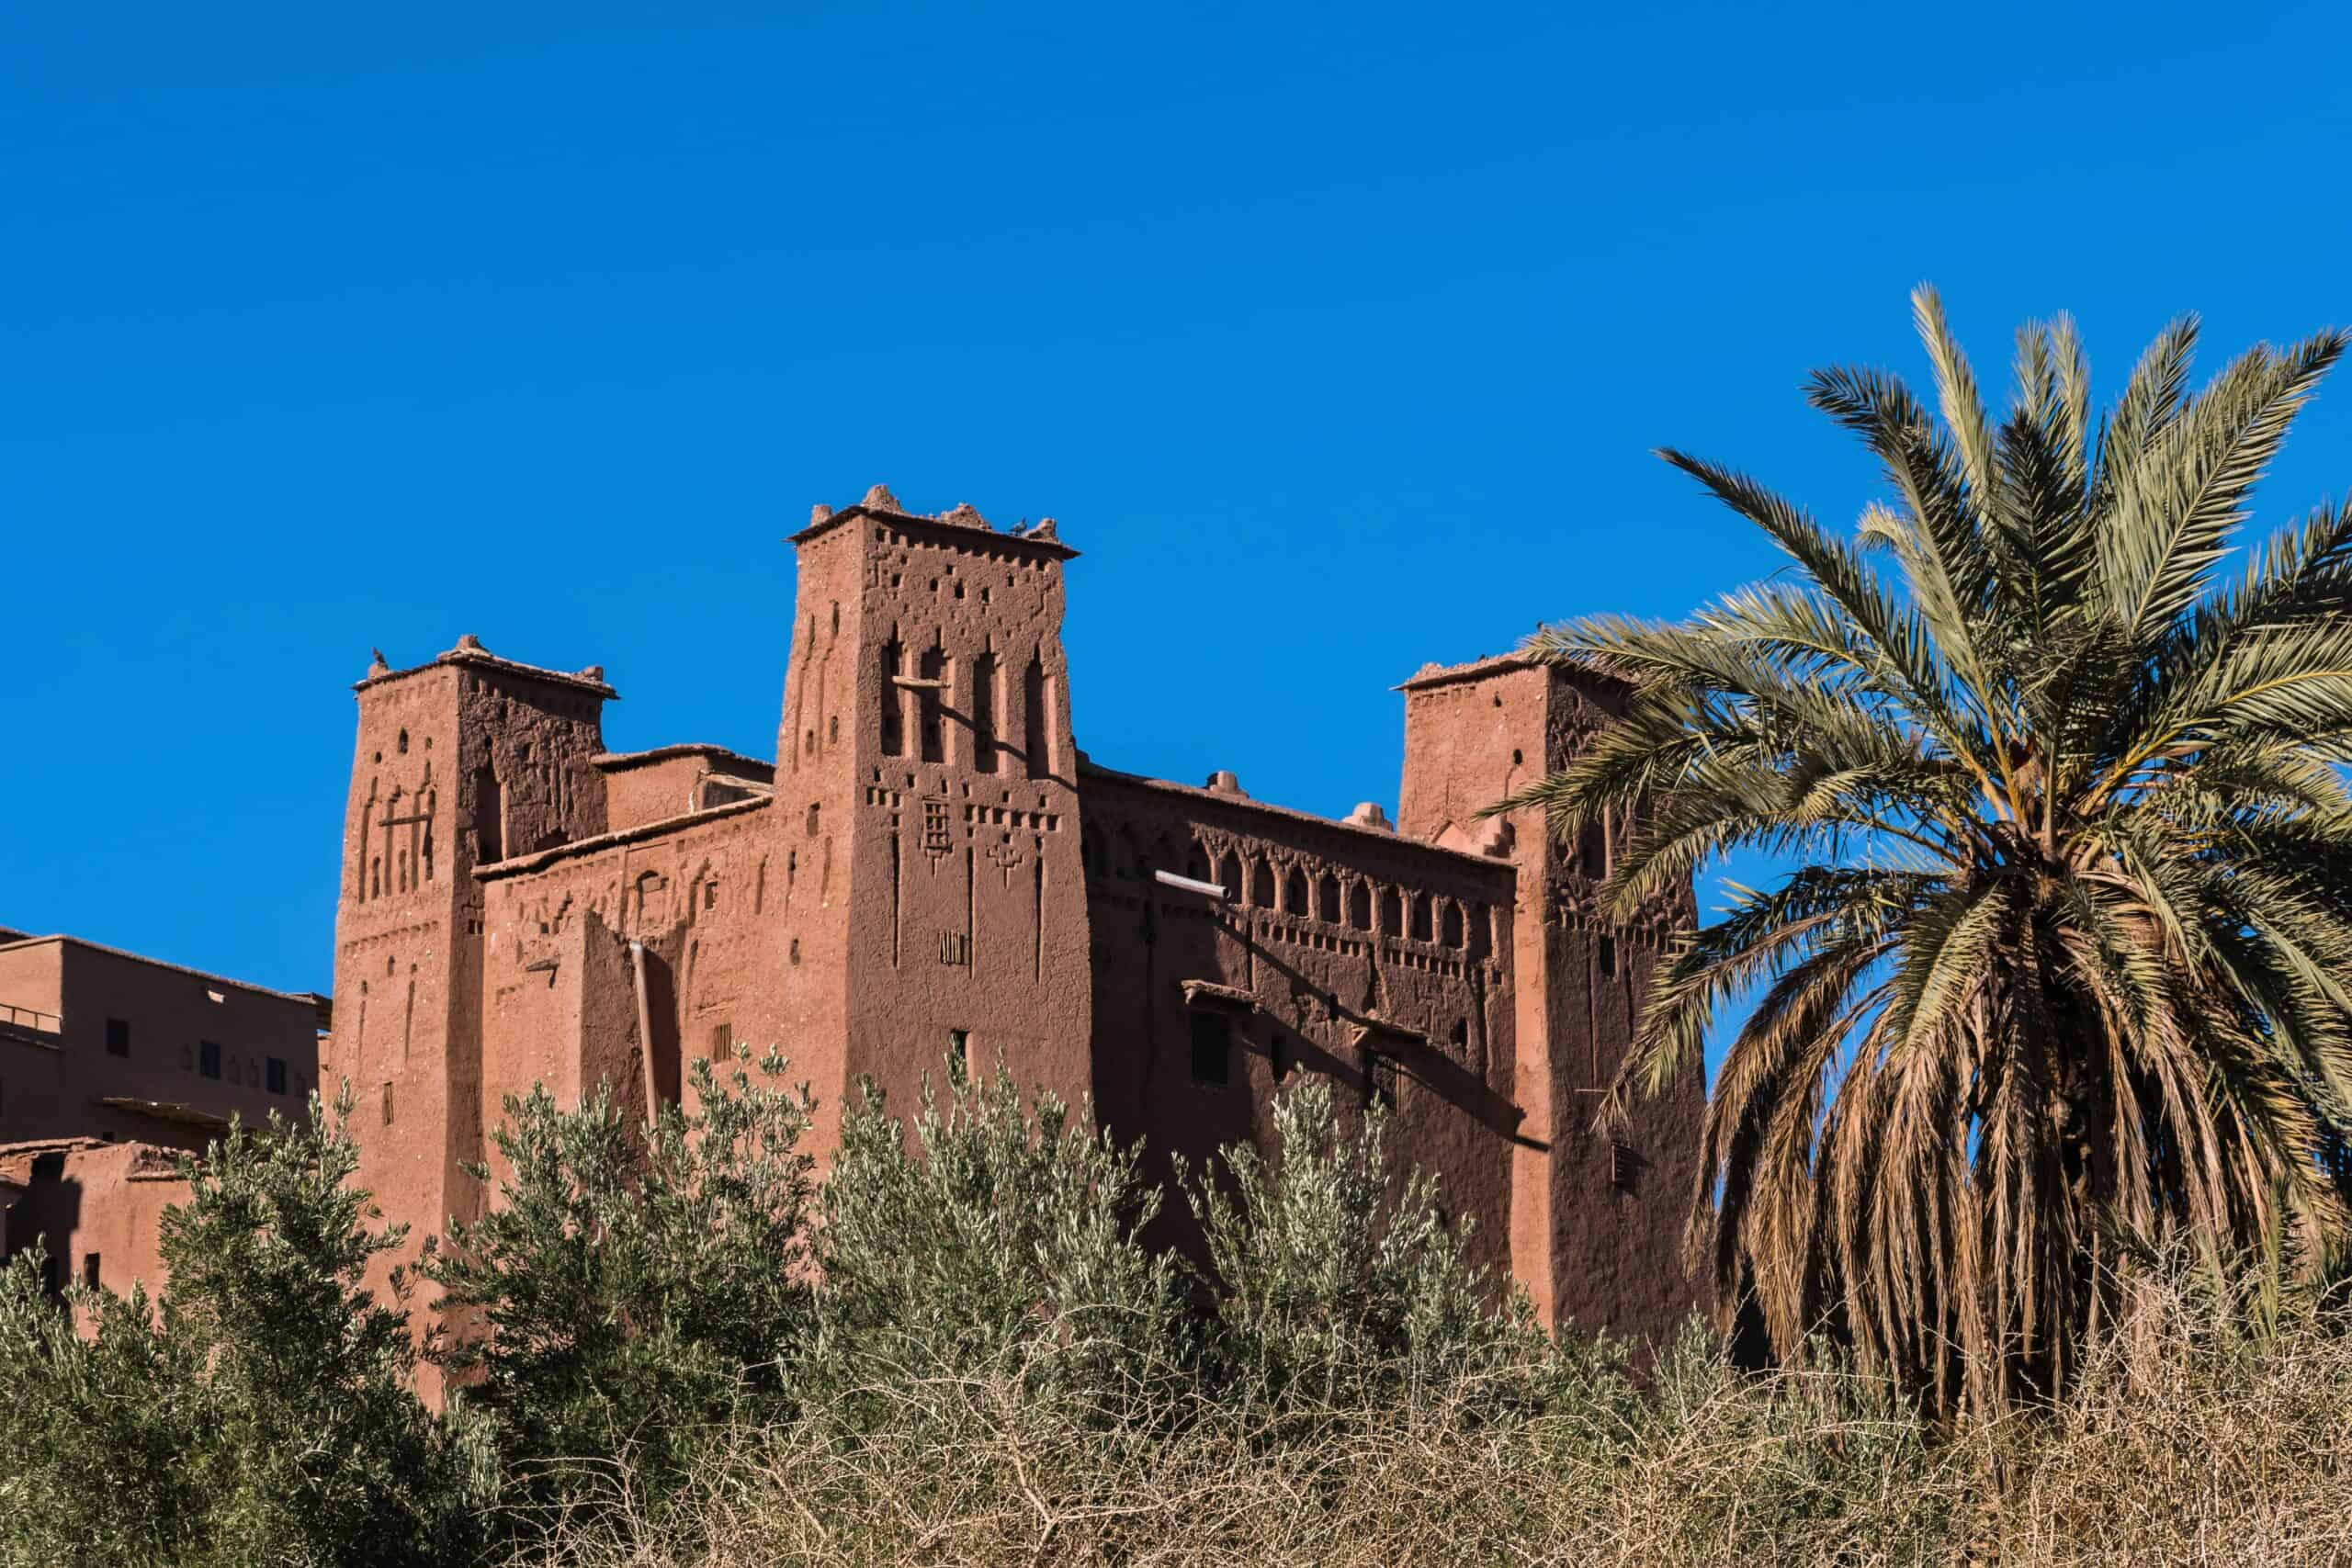 ksar A marvelous short-hop destination from the UK: Marrakech Laura Wallwork battleface.com